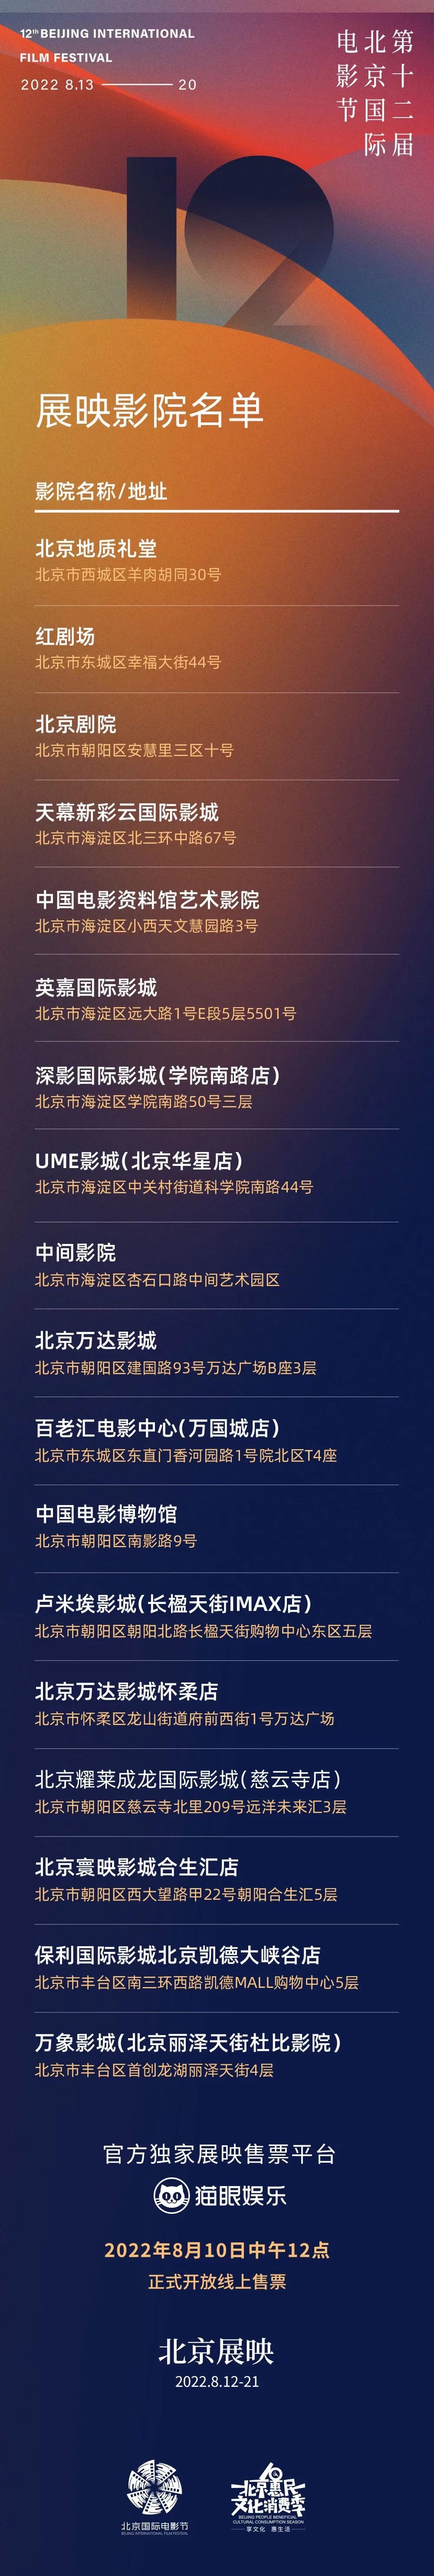 北影节“北京展映”8月10日12点开启线上售票